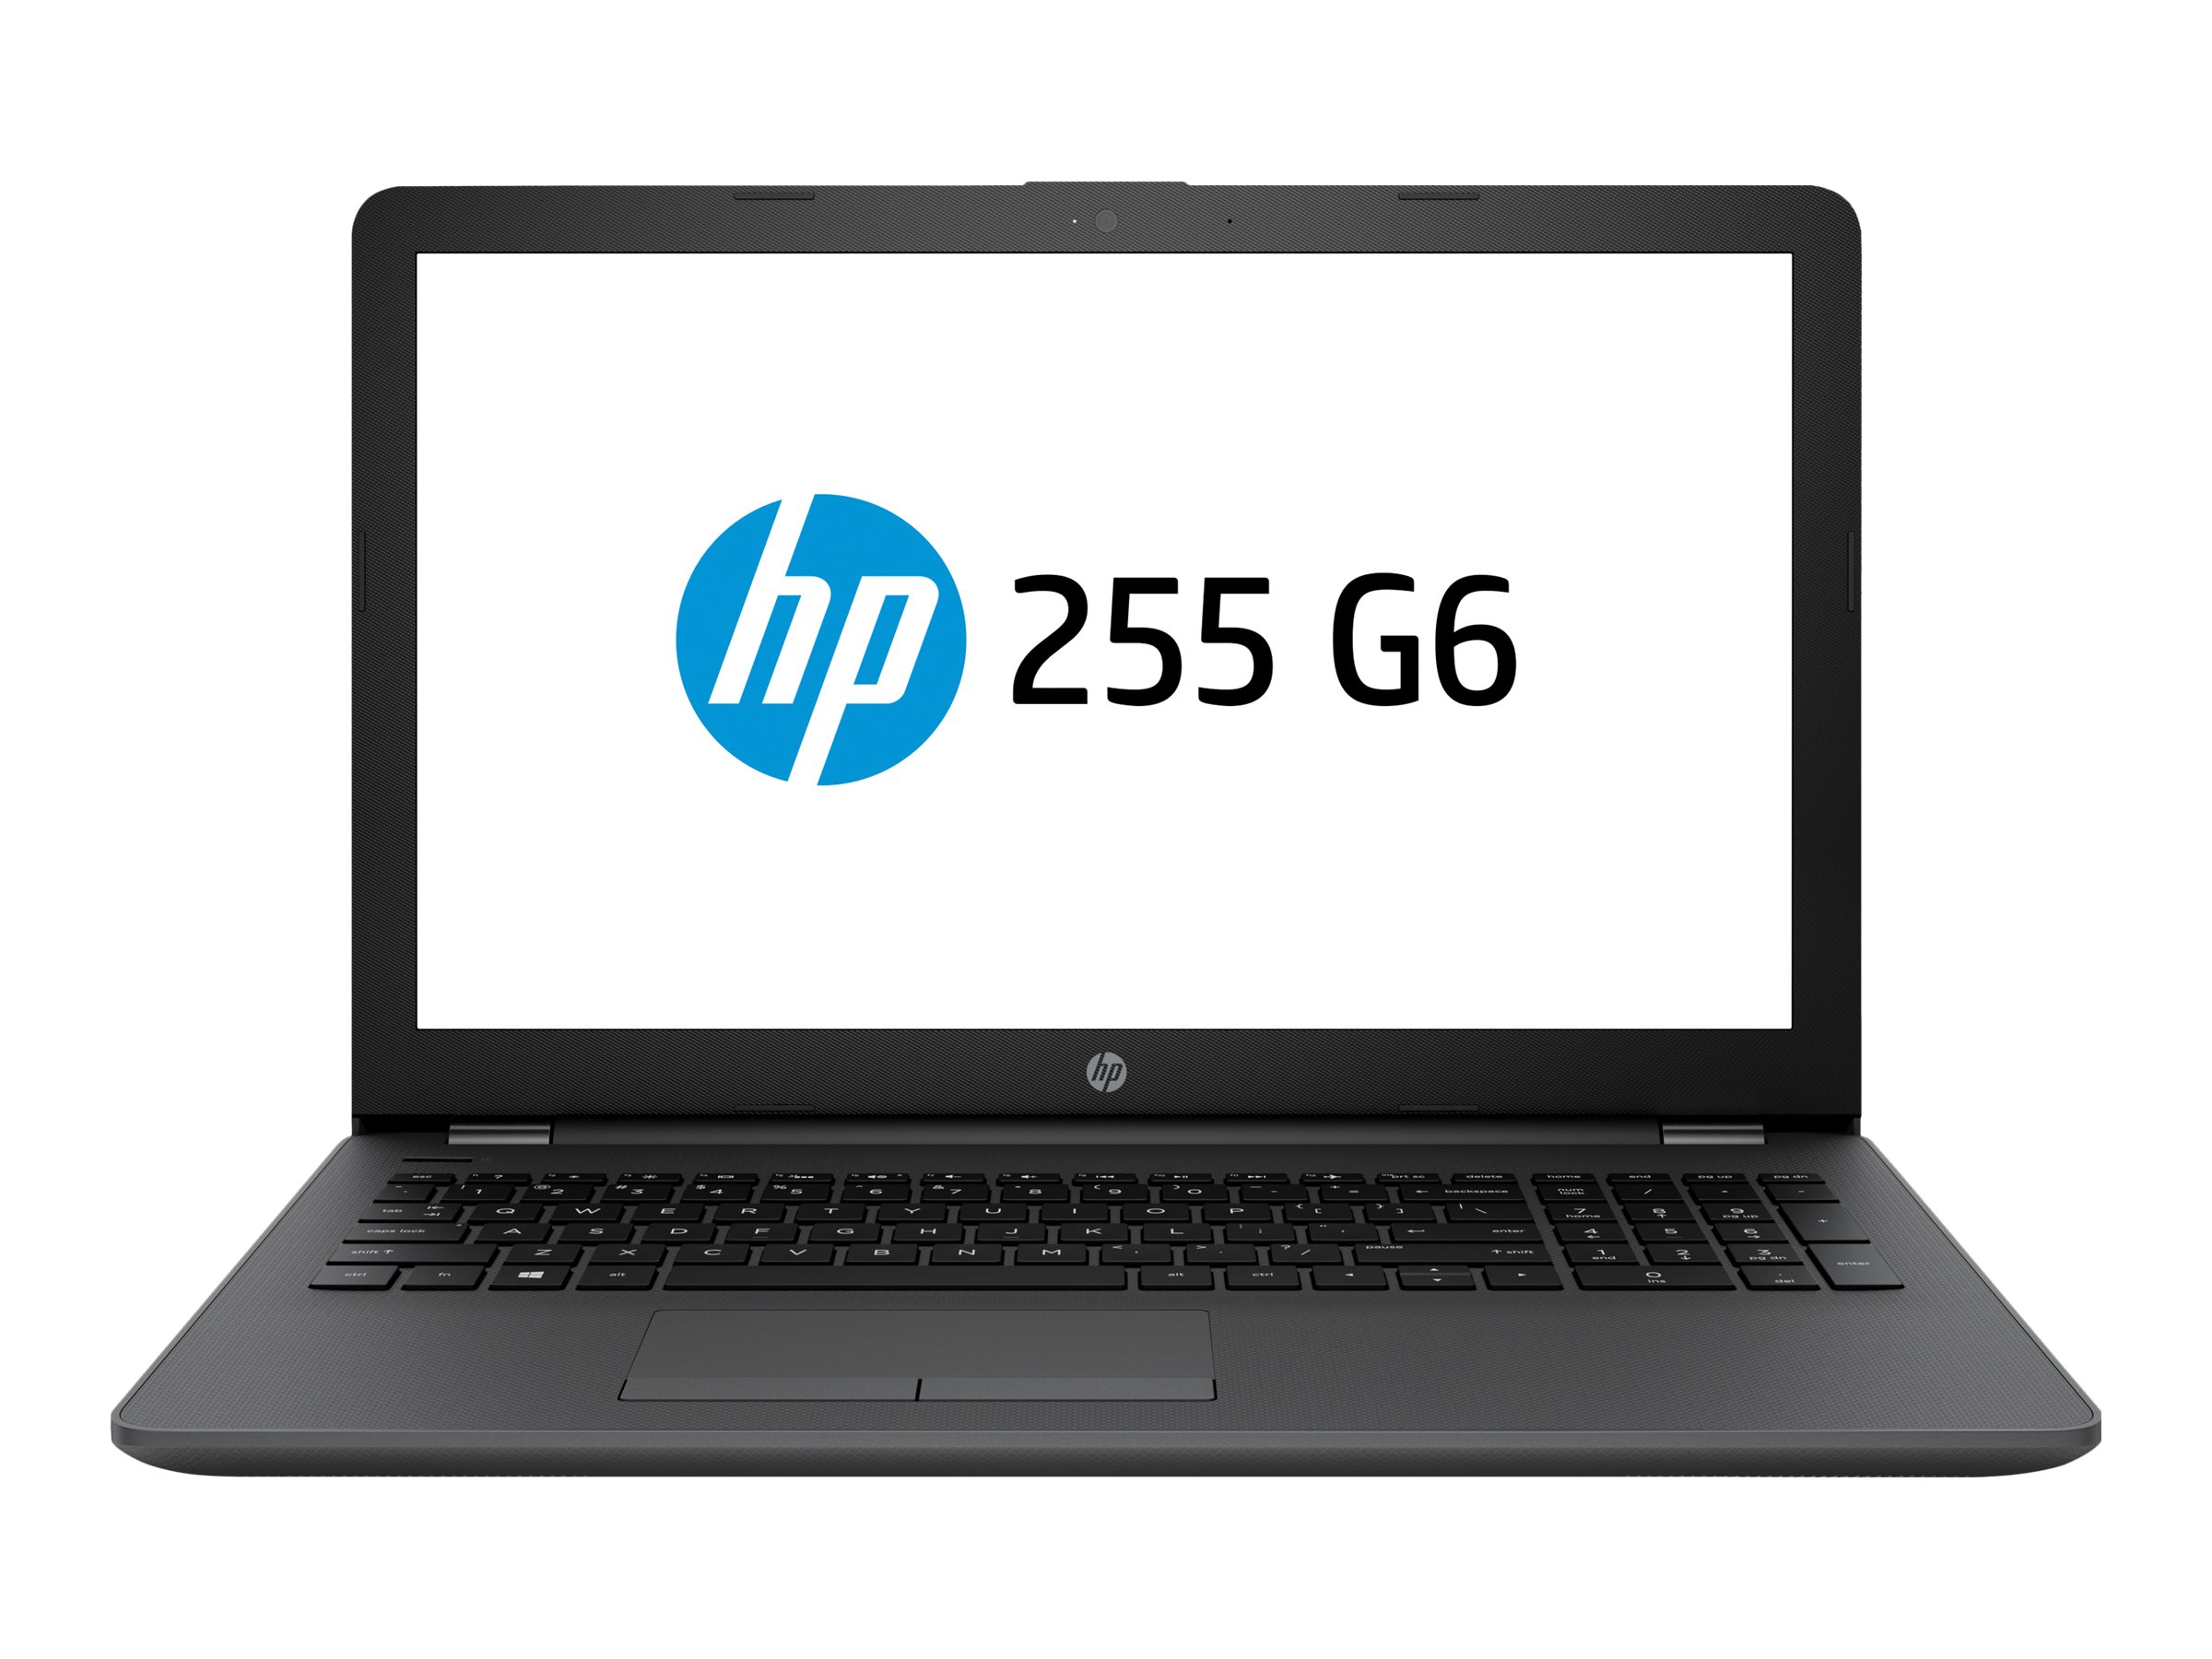 HP 255 G6 Notebook